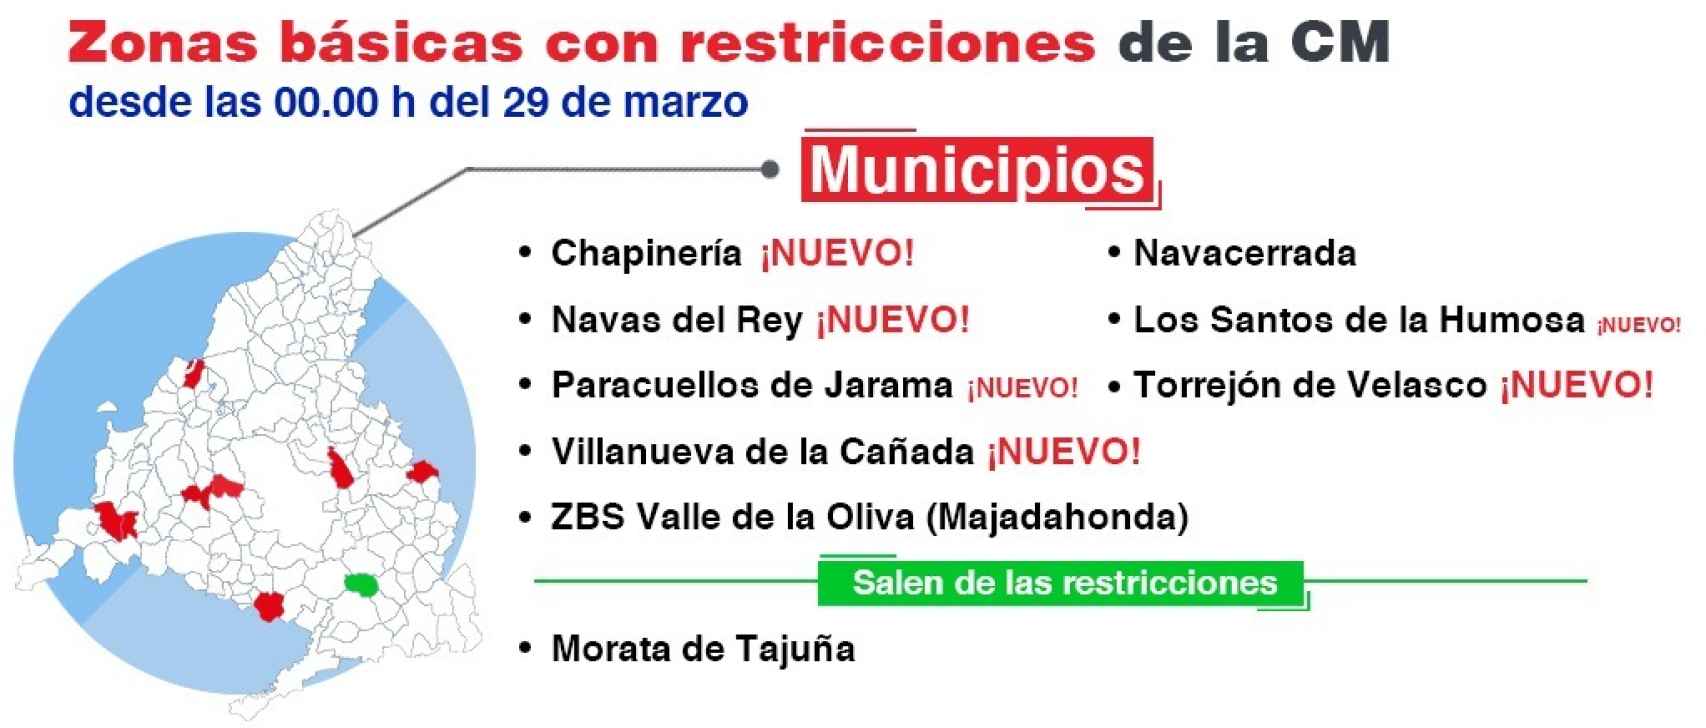 Localidades con restricciones en la Comunidad de Madrid.